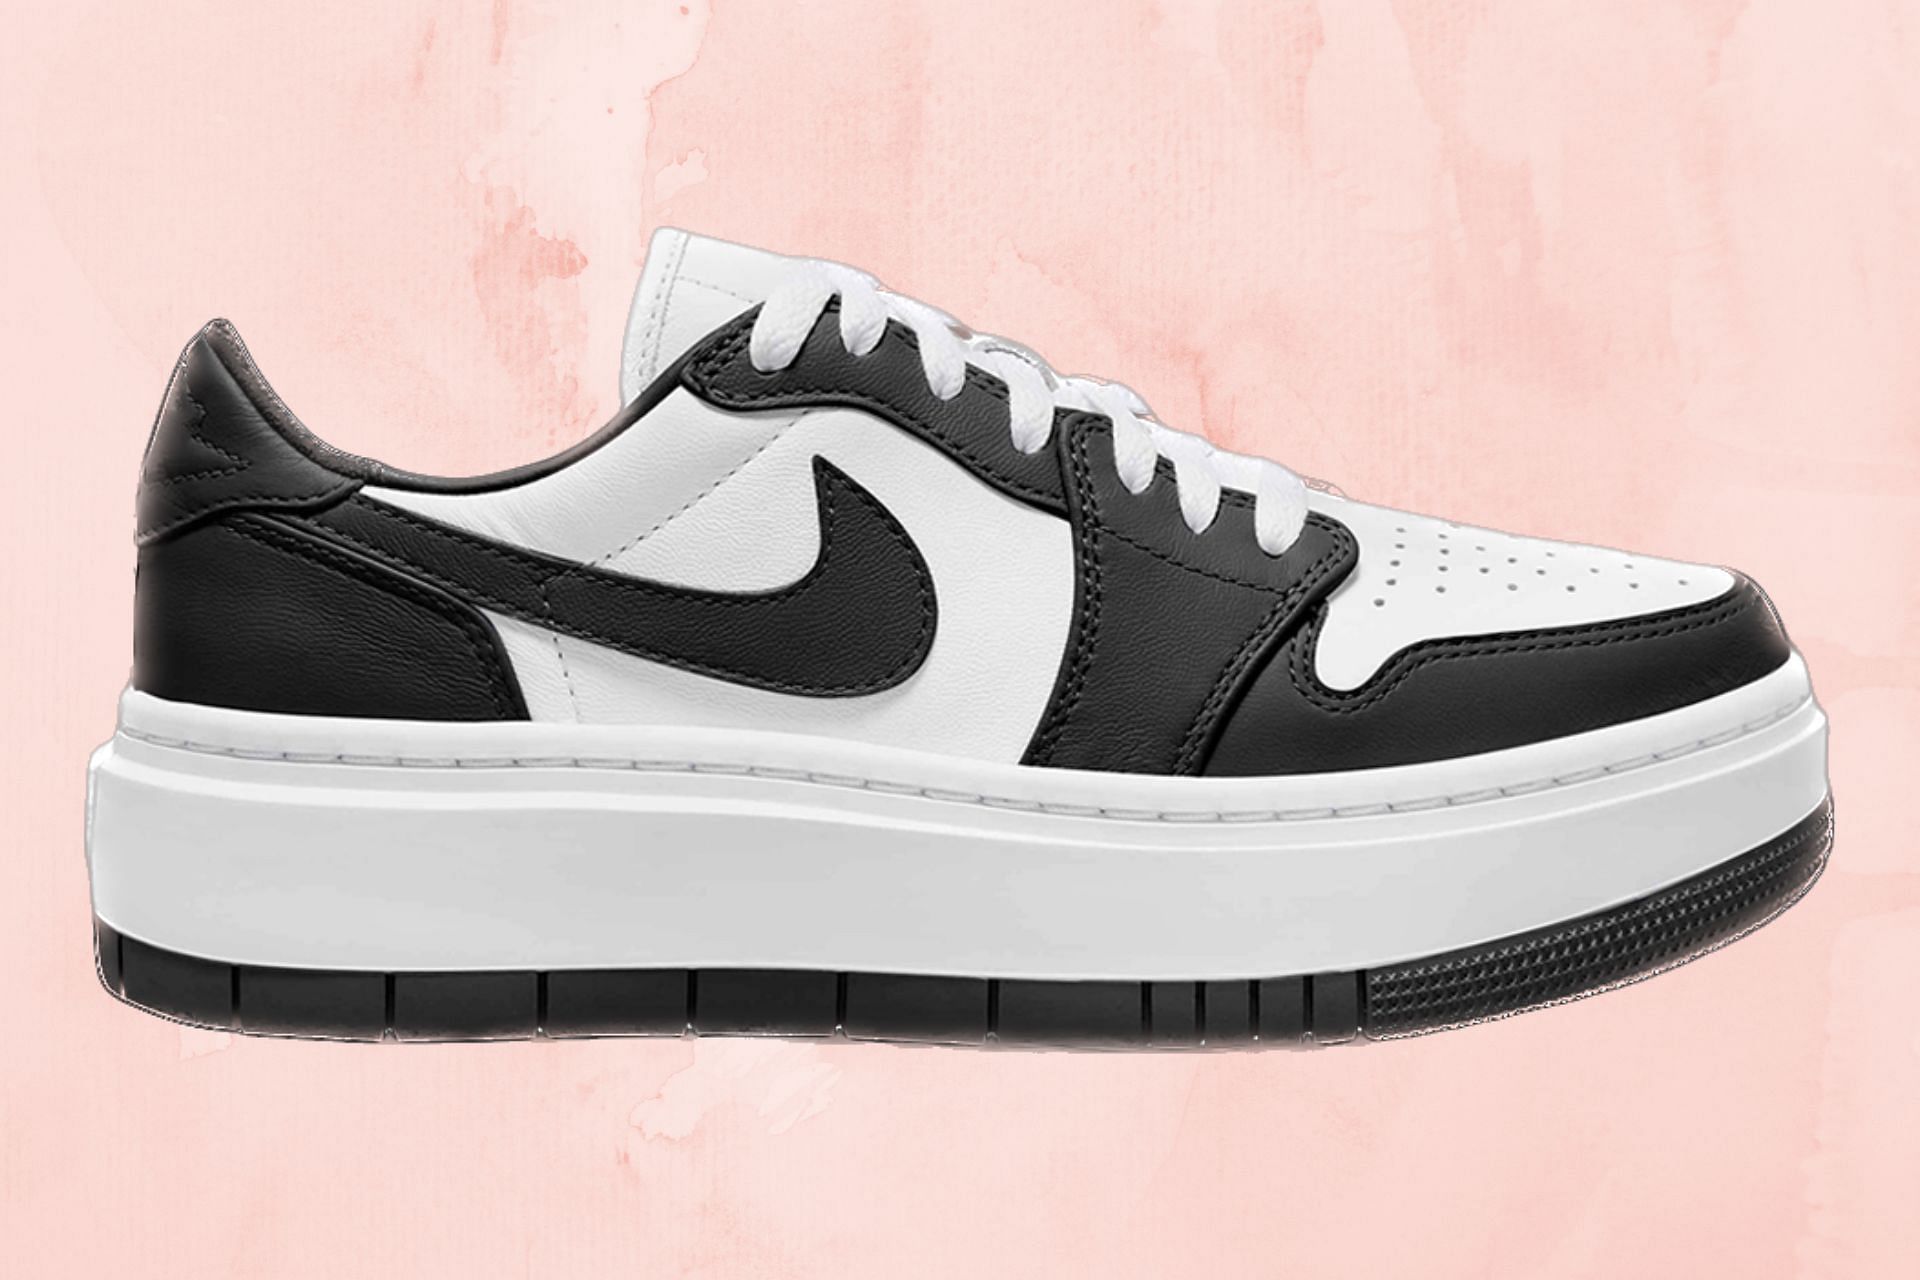 Take a closer look at the upcoming Air Jordan 1 Low Elevate Panda shoes (Image via Nike)